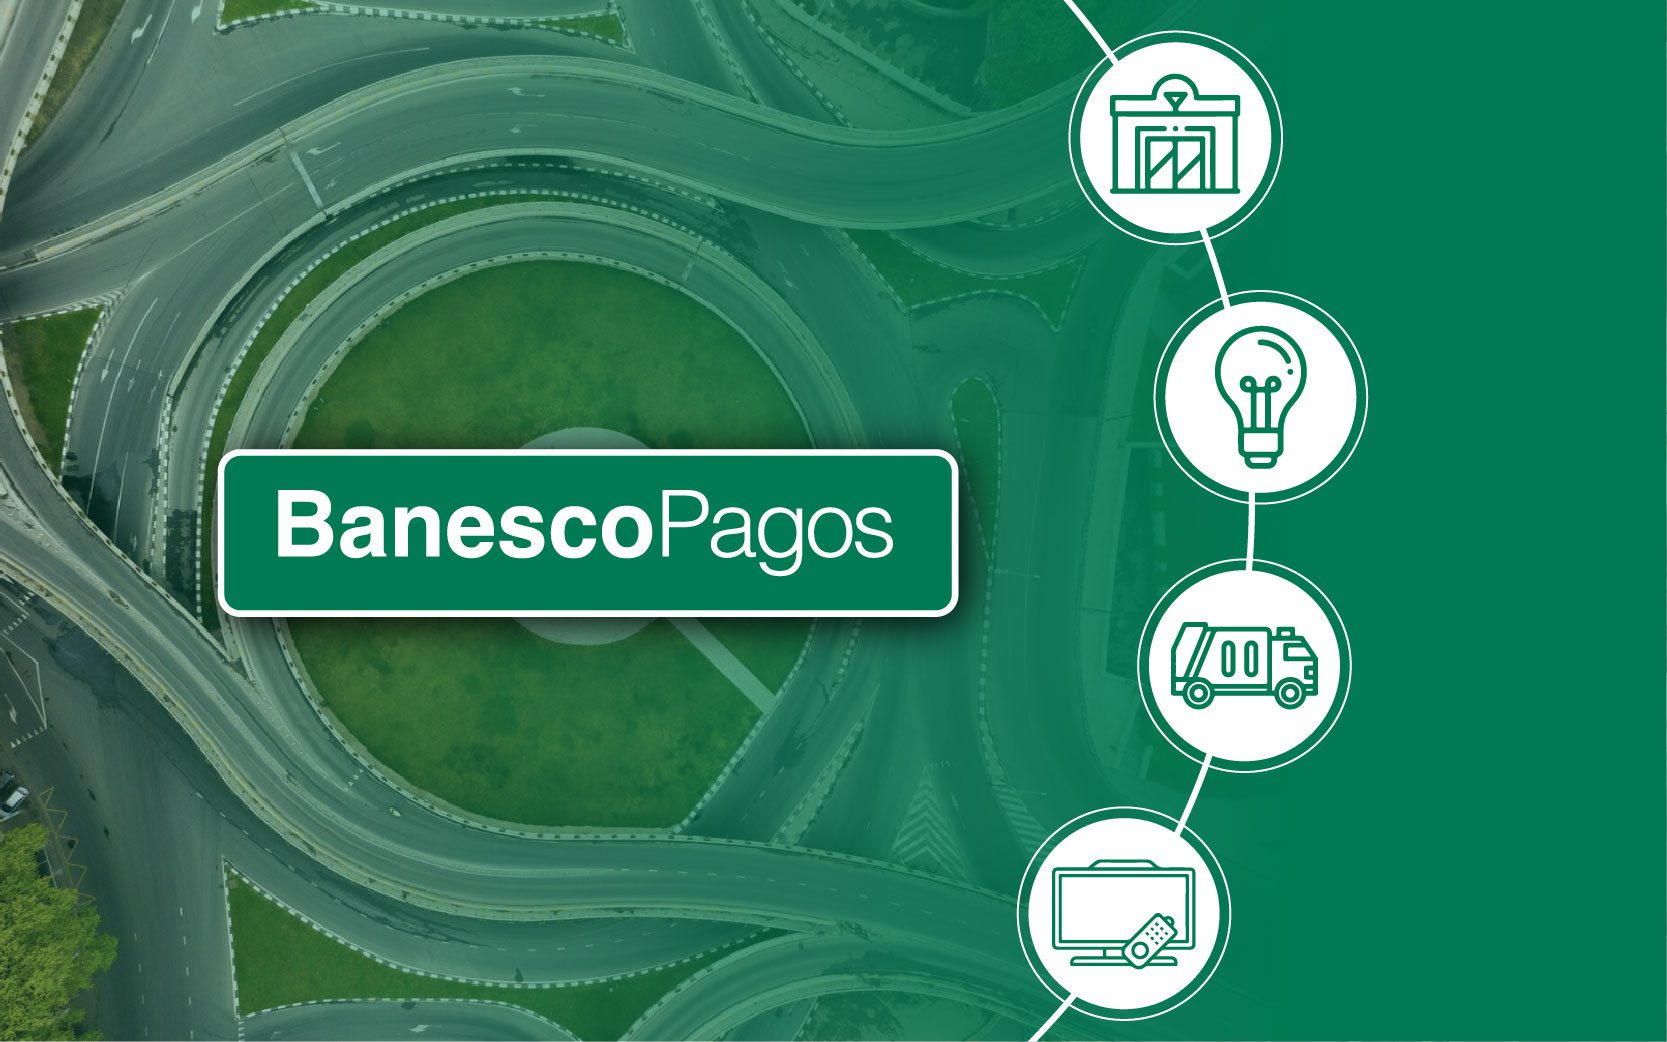 BanescoPagos